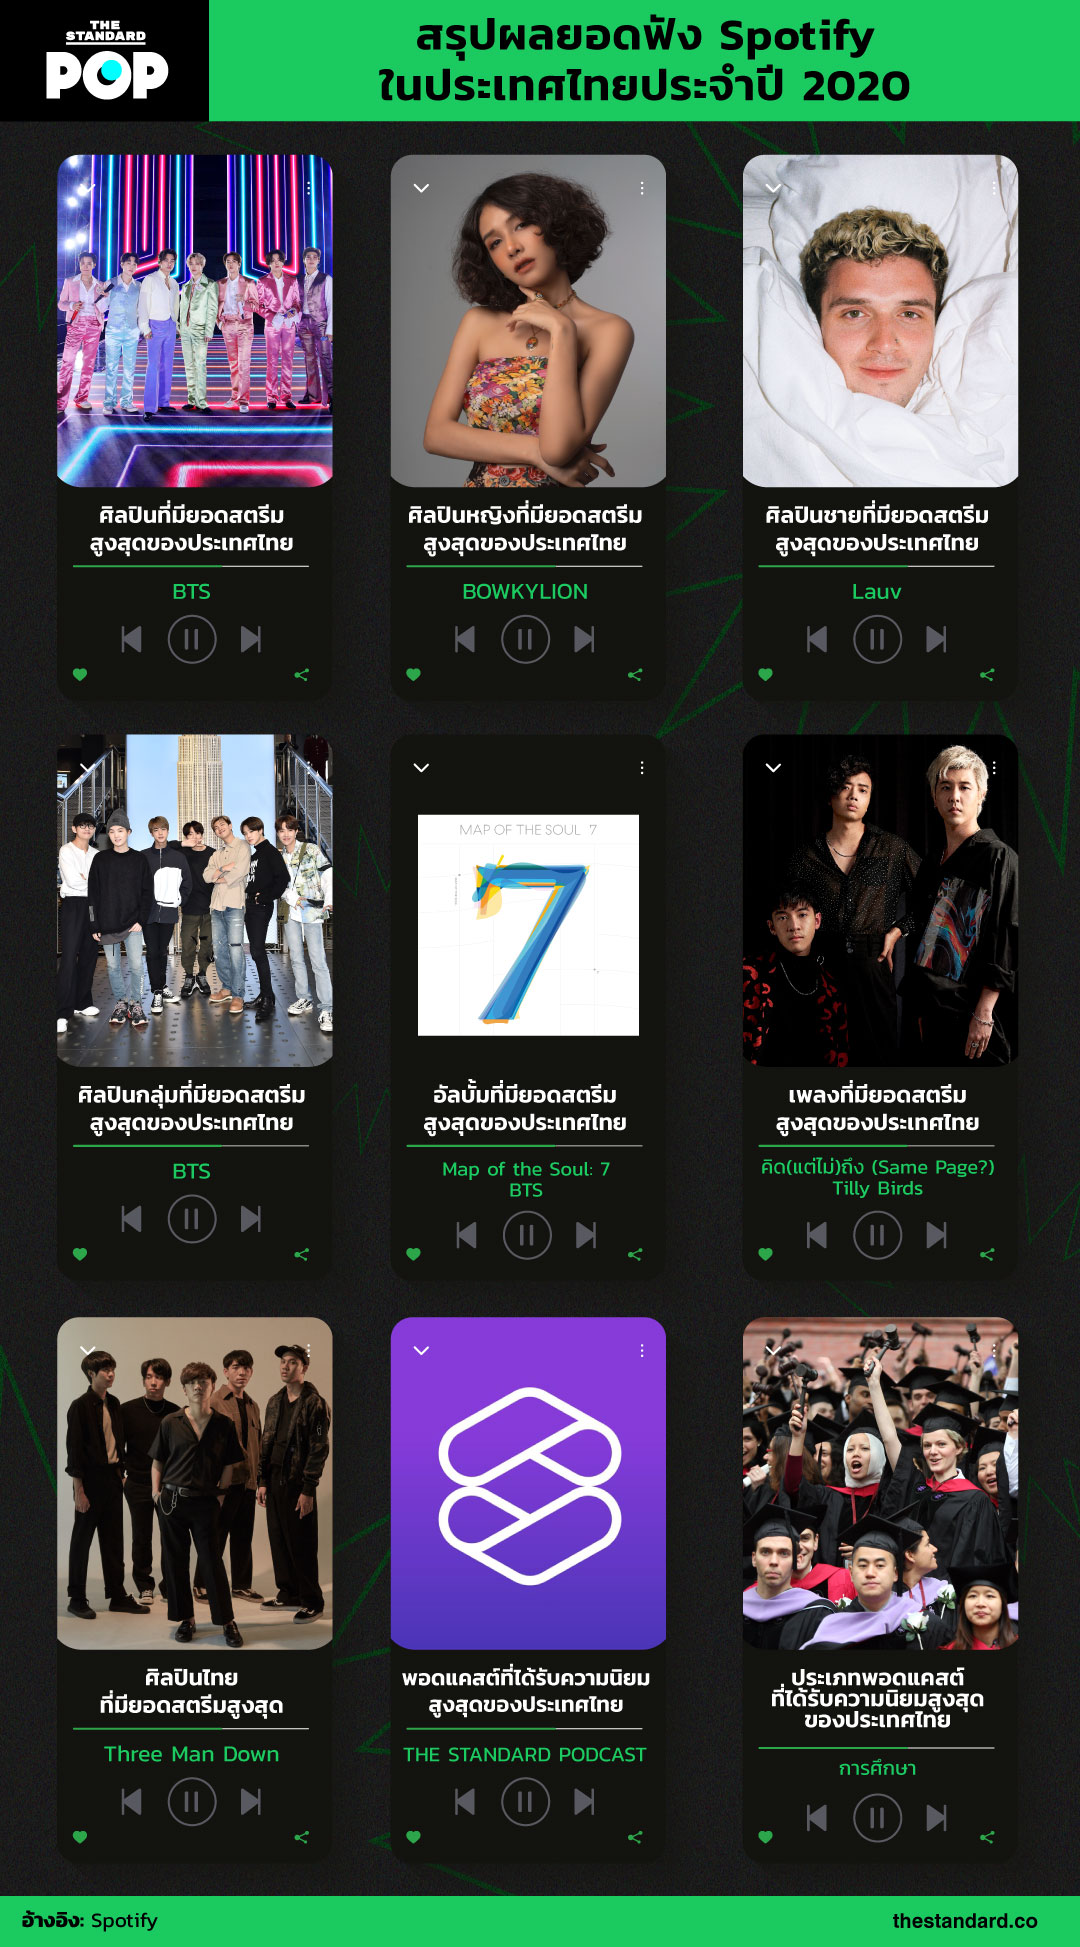 สรุปผลยอดฟัง Spotify ในประเทศไทยประจำปี 2020